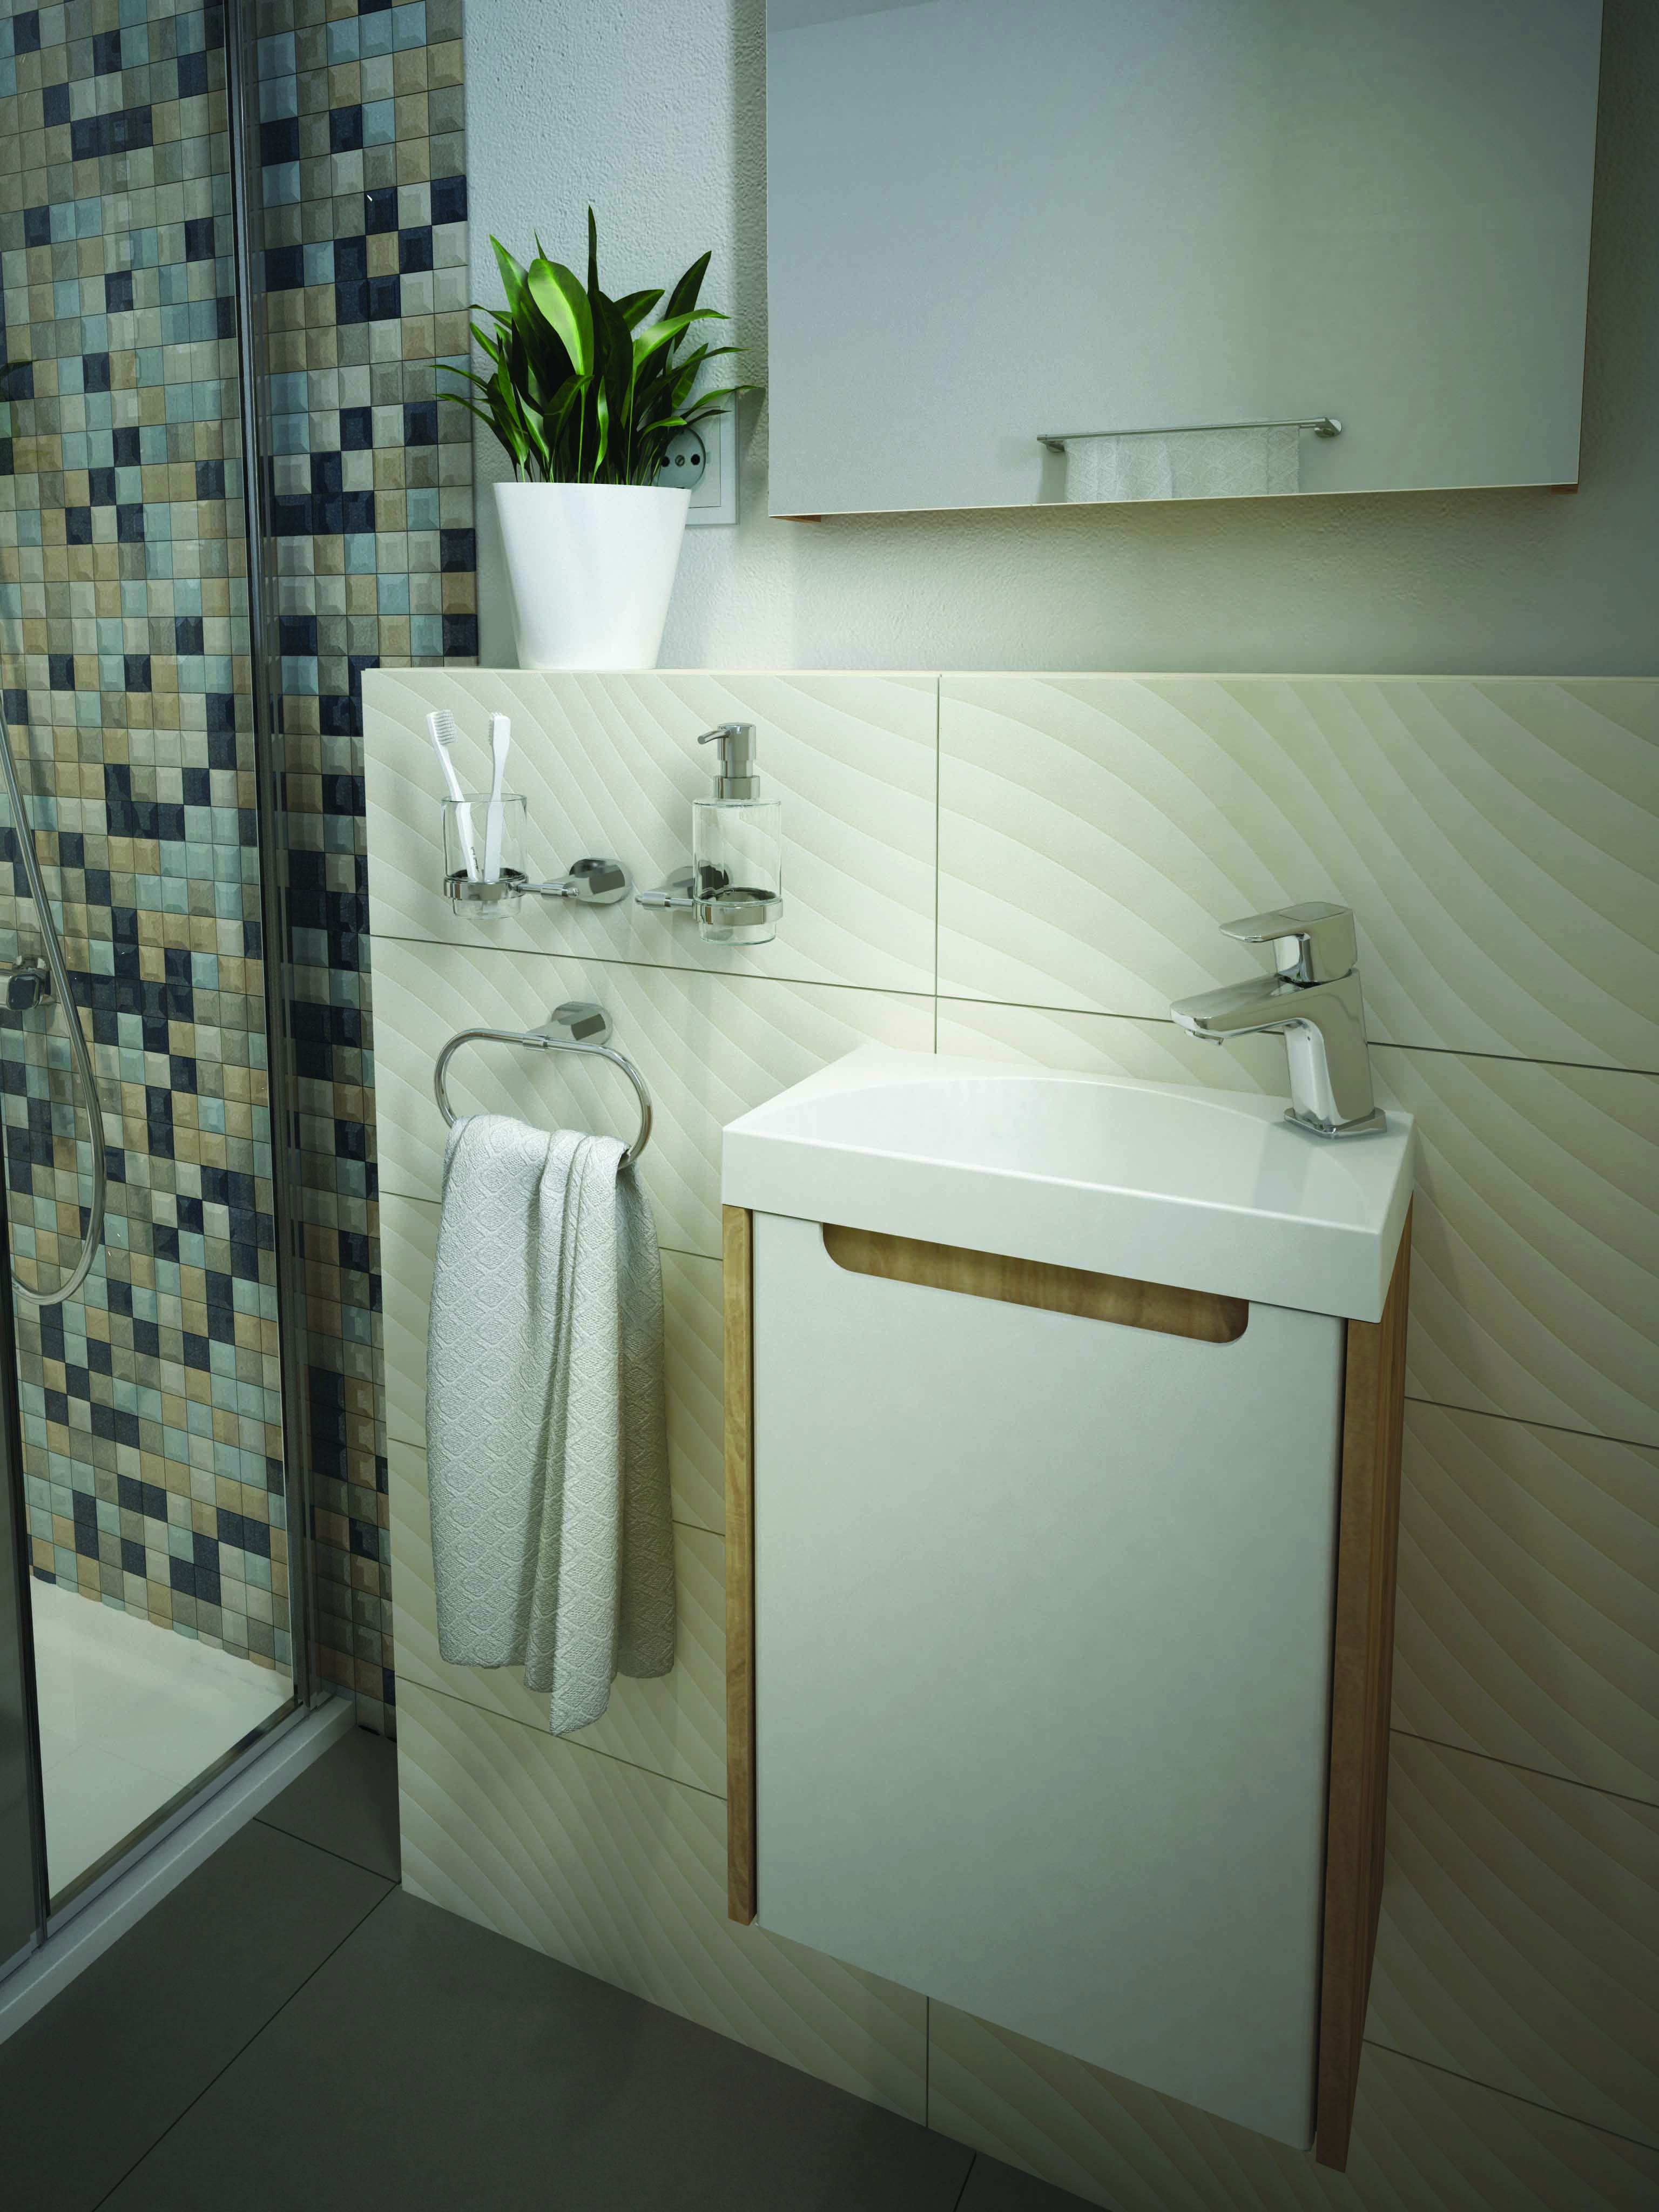 A legkisebb, jobbos fürdőszobai kézmosónk bármilyen alapterületű fürdőszobában remekel, a szanitervásárlók visszajelzései szerint is.